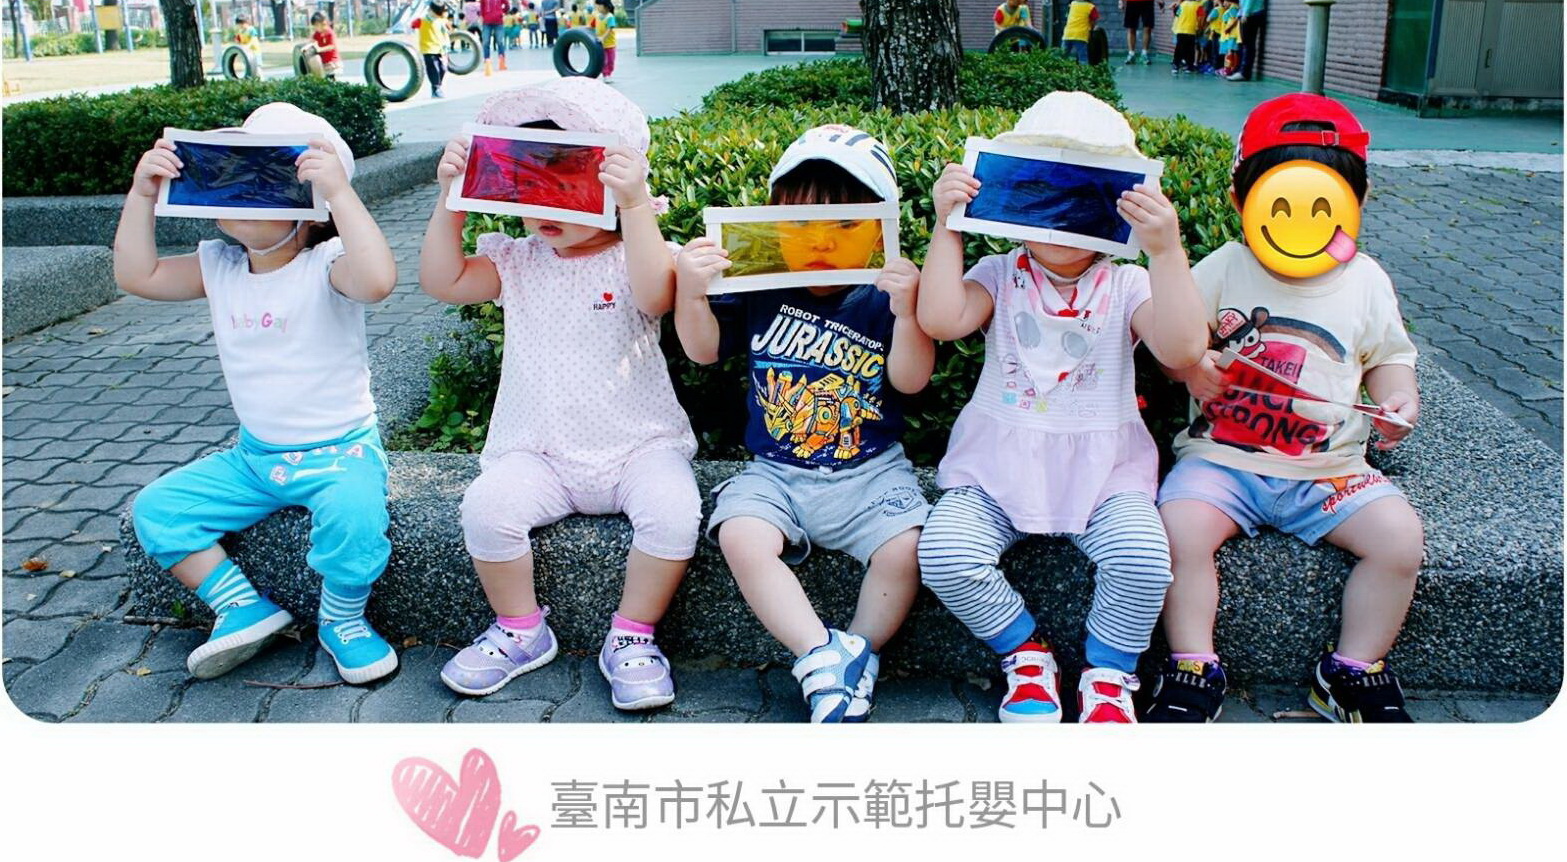 臺南市私立示範托嬰中心